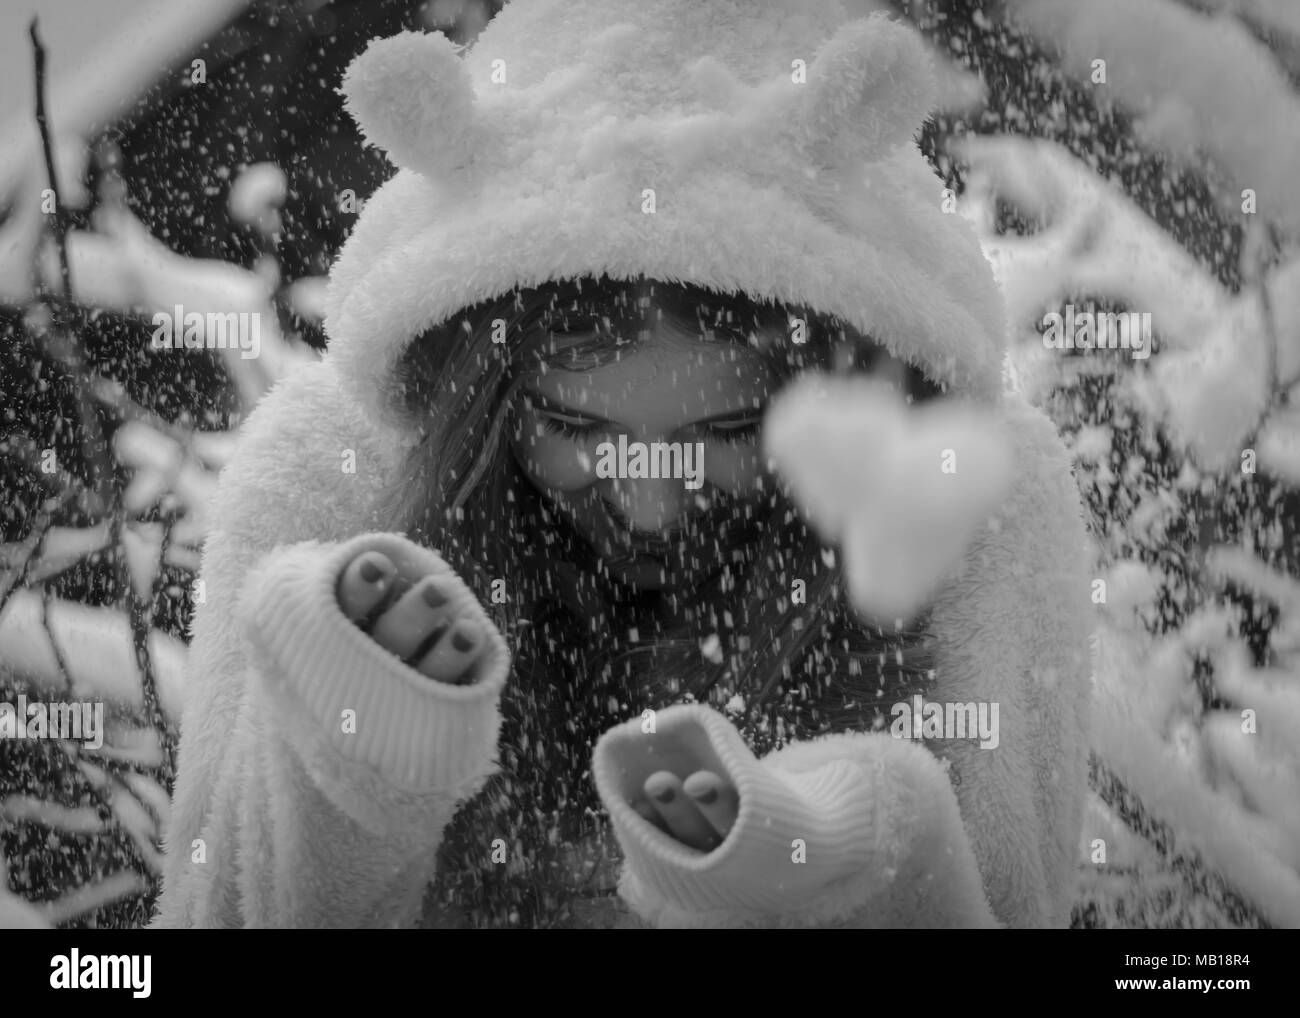 Portrait von niedlichen Happy teenage Mädchen im Schnee, Schwarz und Weiß. Closeup schöne jugendlich Mädchen, lange Haare, weißes Fell, lächelnd im Schnee. Winter Thema. Stockfoto